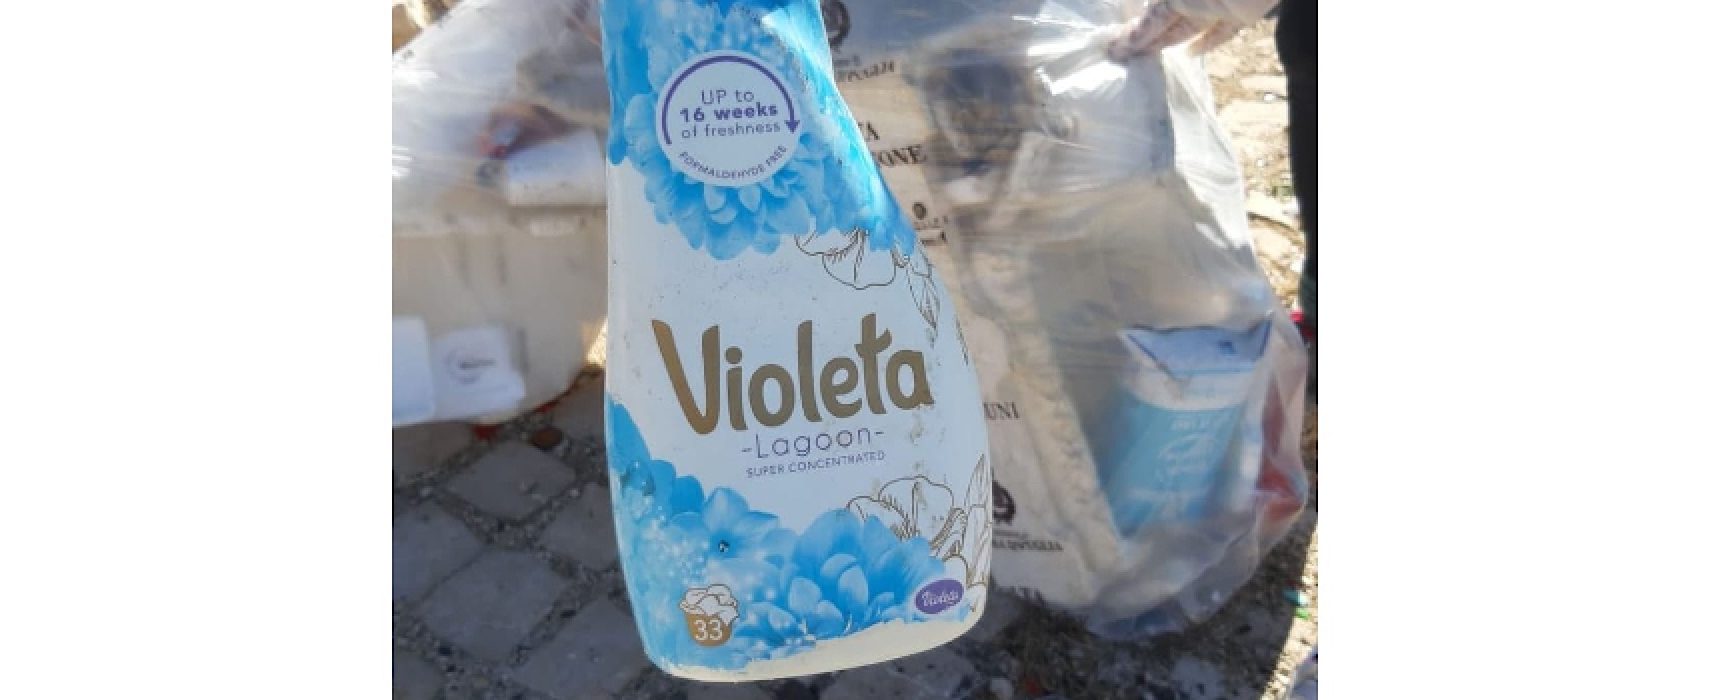 Ripalta, puliscono spiaggia e trovano una bottiglia di detersivo dalla Croazia / FOTO